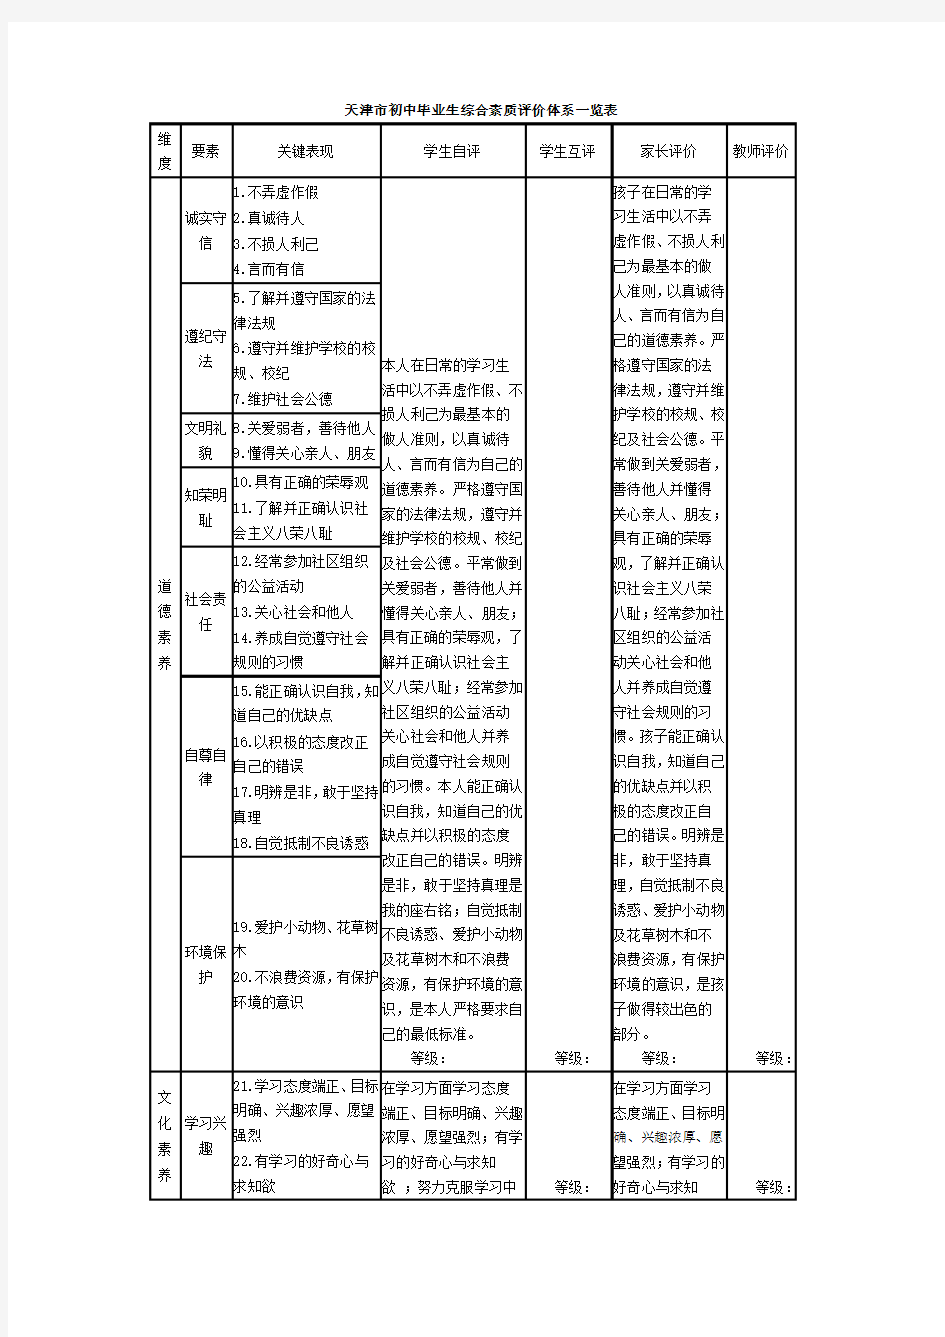 天津市初中毕业生综合素质评价体系一览表